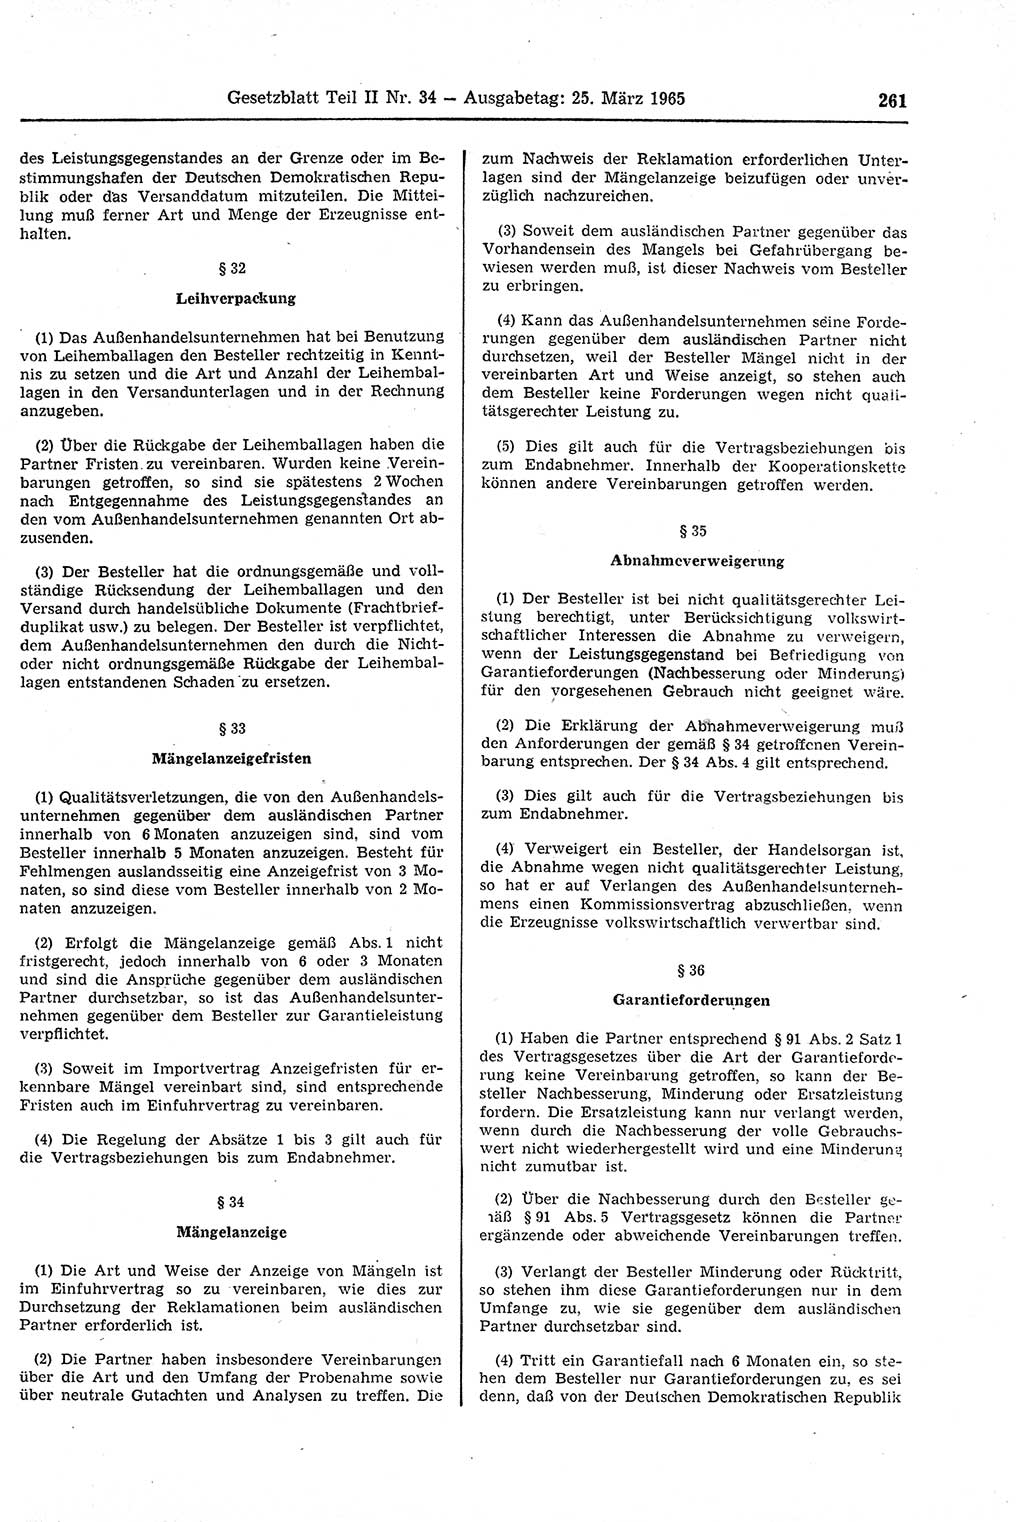 Gesetzblatt (GBl.) der Deutschen Demokratischen Republik (DDR) Teil ⅠⅠ 1965, Seite 261 (GBl. DDR ⅠⅠ 1965, S. 261)